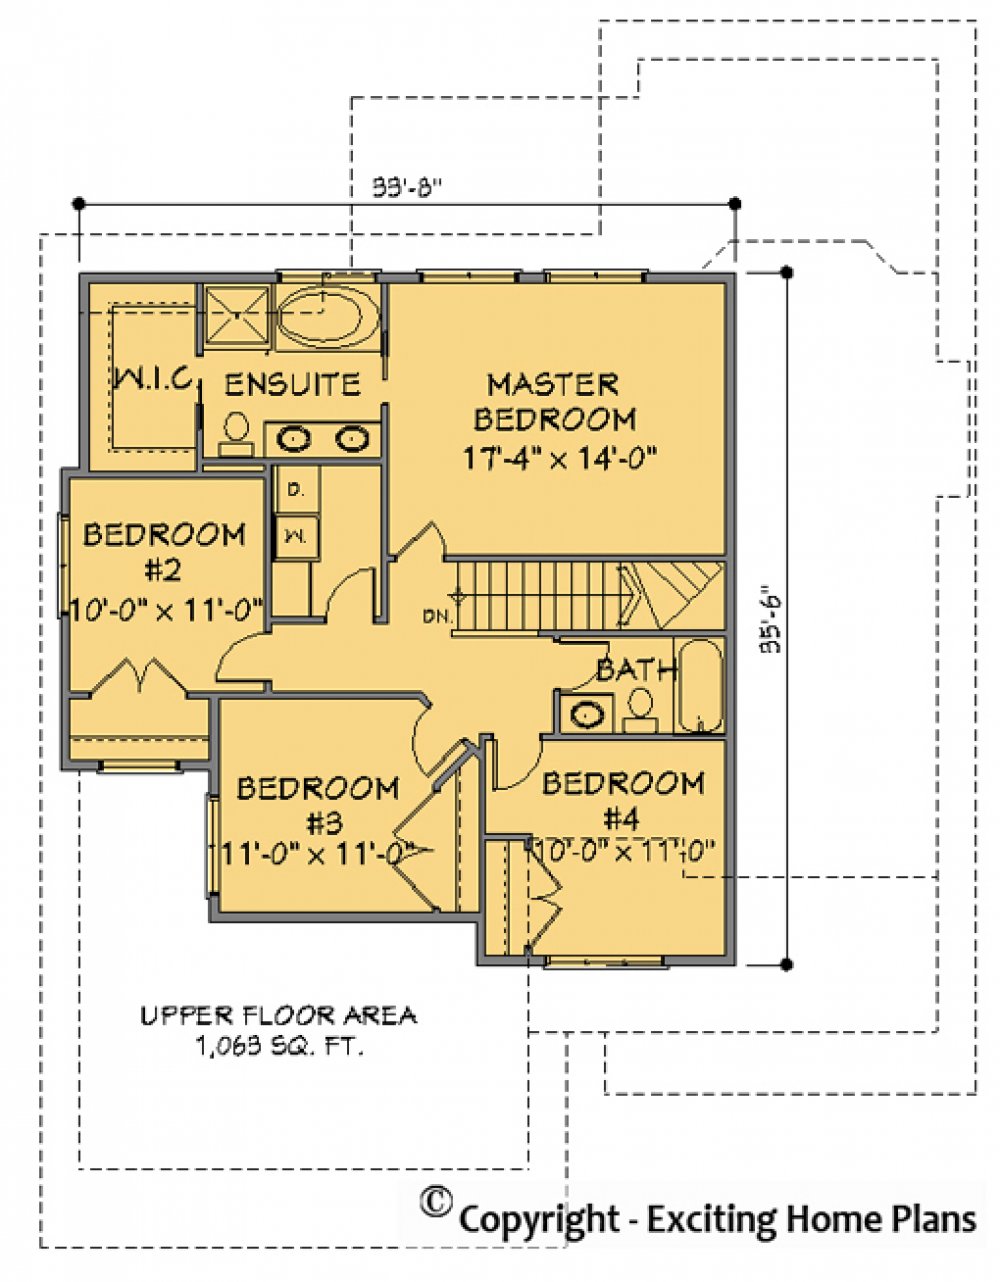 House Plan E1147-10 Upper Floor Plan